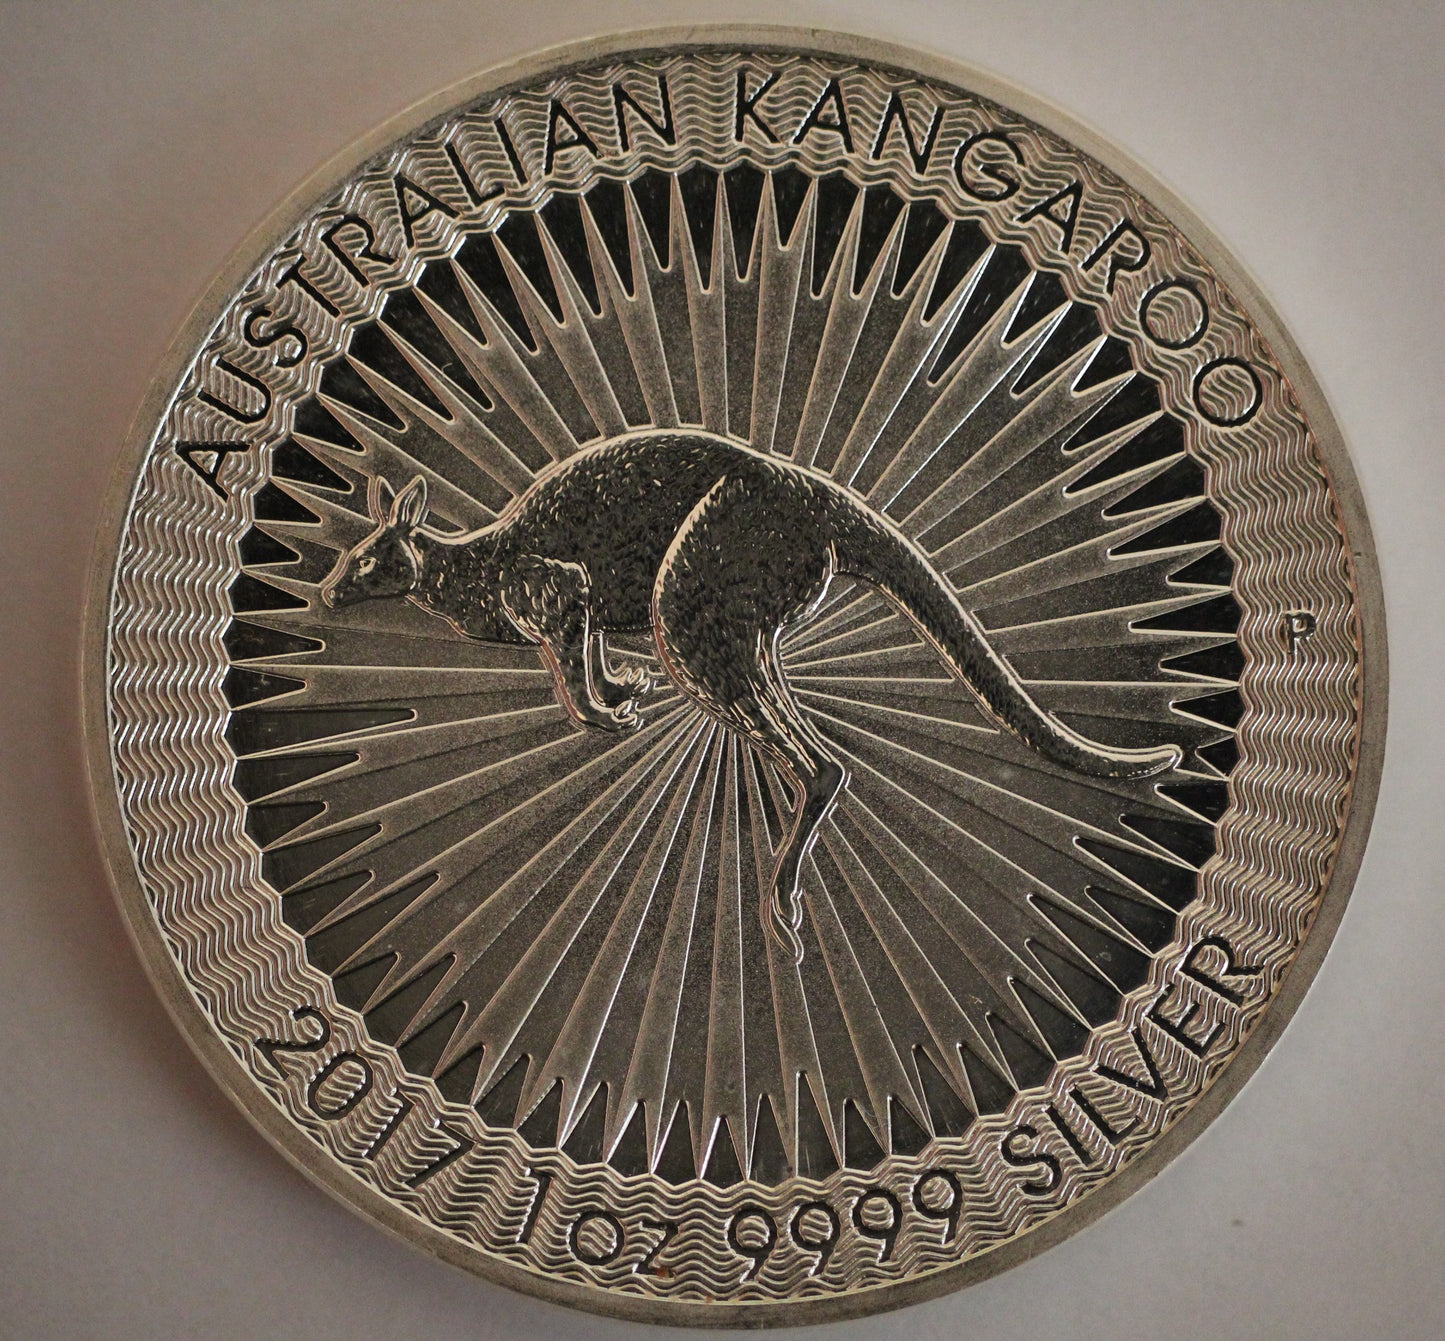 2017 1 oz Silver .9999 Fine Silver Australian Kangaroo $1 Coin - Spots